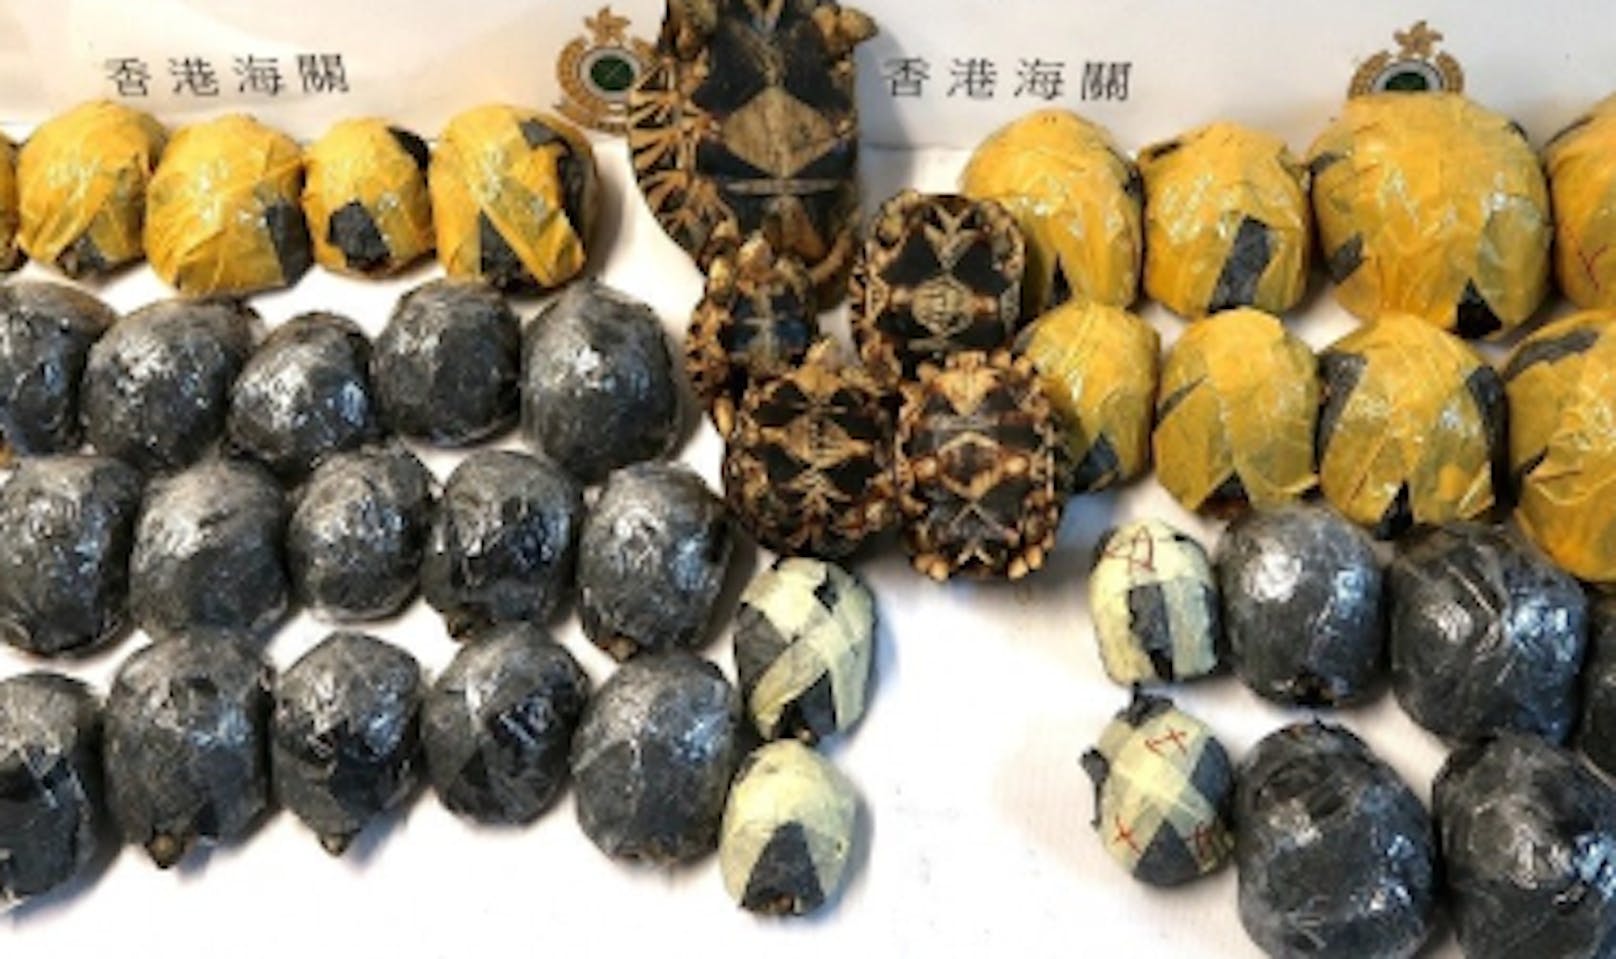 Die vom Aussterben bedrohten und in Hong Kong konfiszierten Madagaskar-Strahlenschildkröten erholen sich jetzt im Tierpark Berlin.